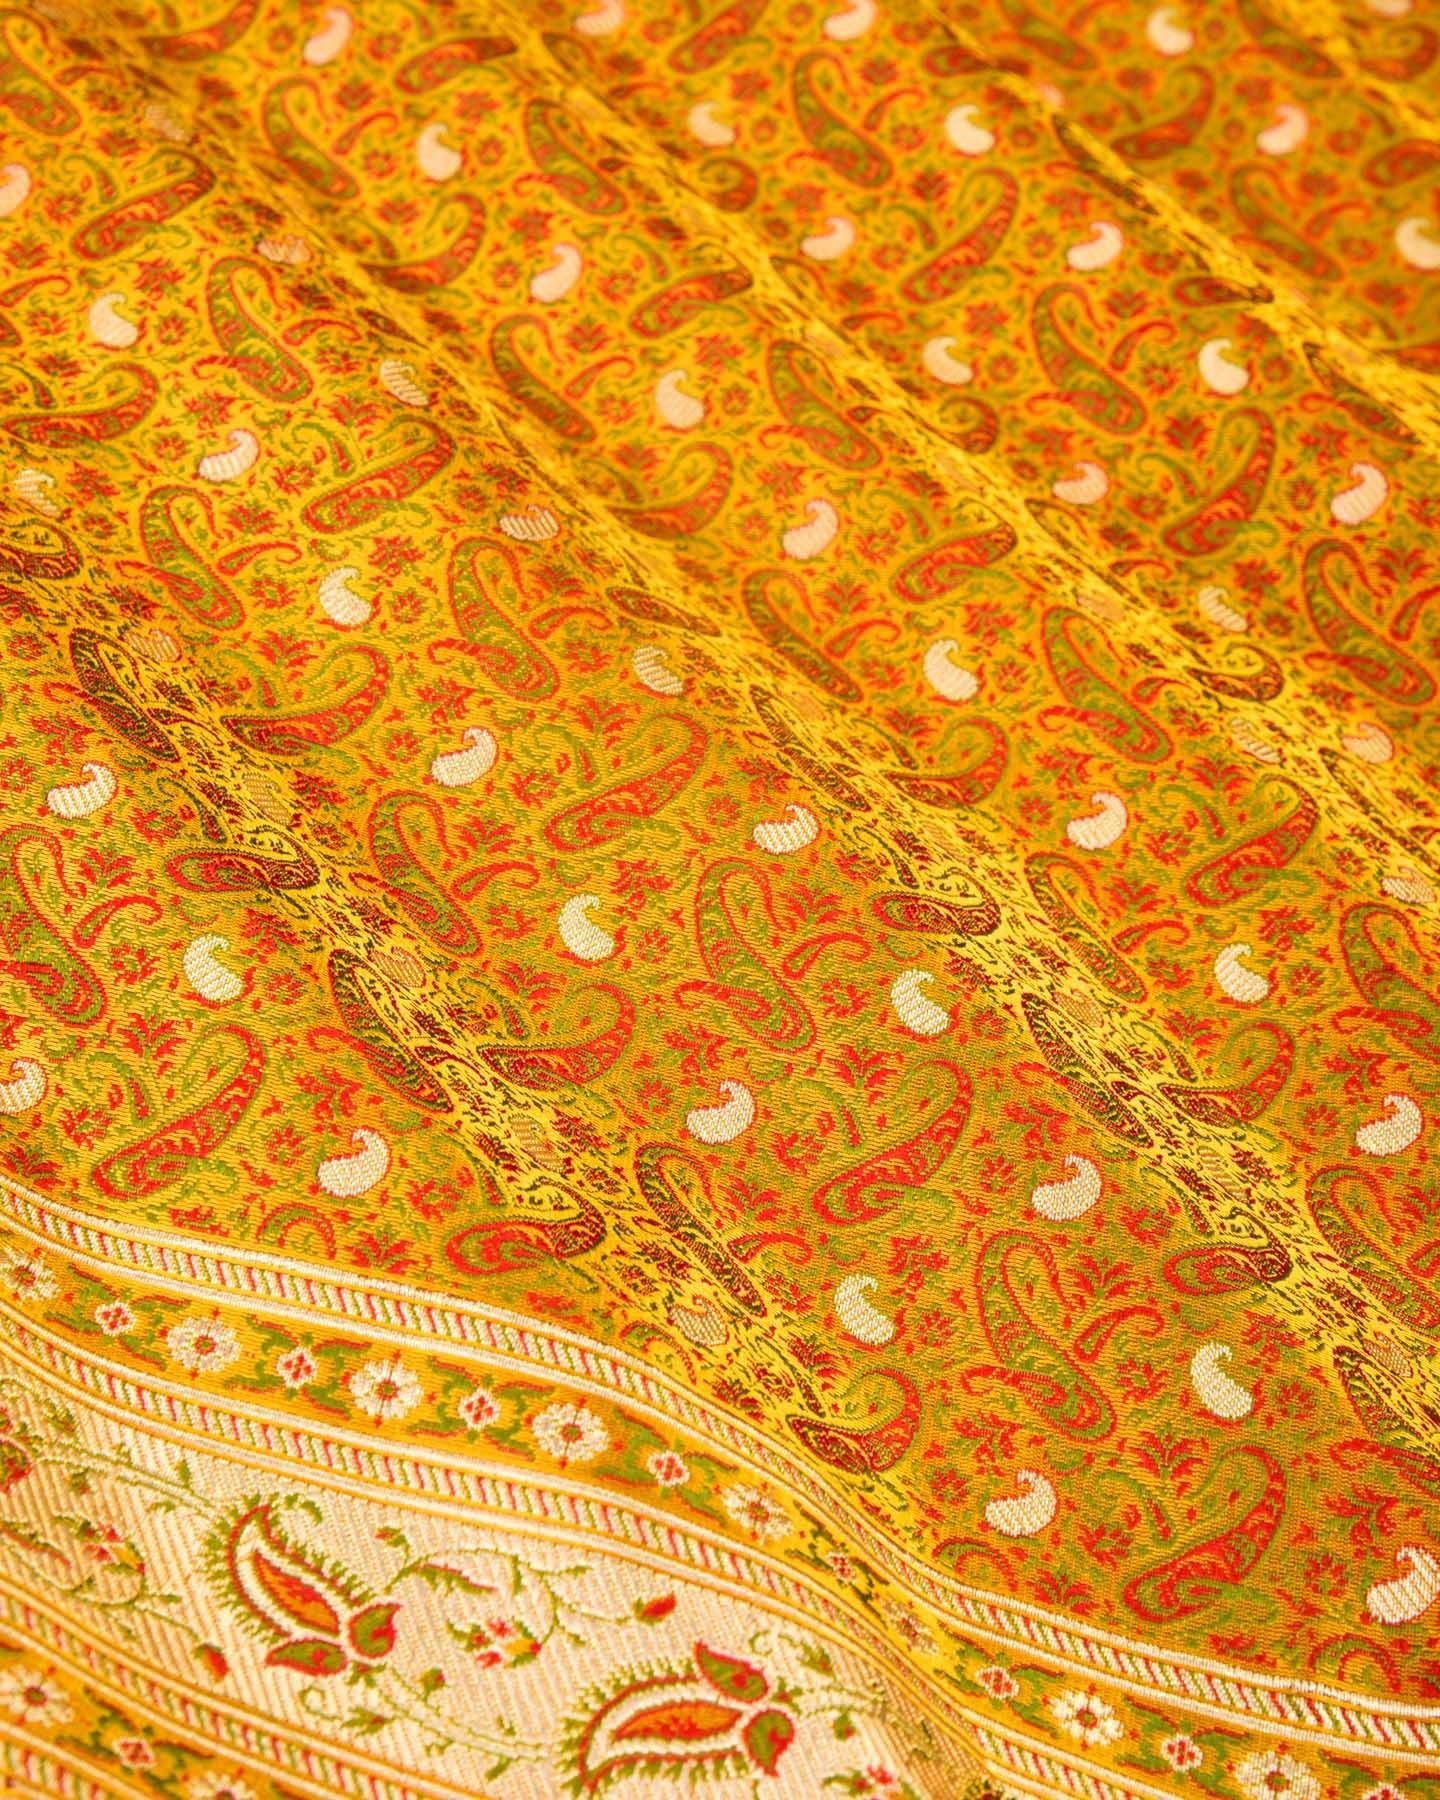 Mustard Yellow Banarasi Tehri Jamawar Brocade Handwoven Katan Silk Saree with Zari Accents - By HolyWeaves, Benares